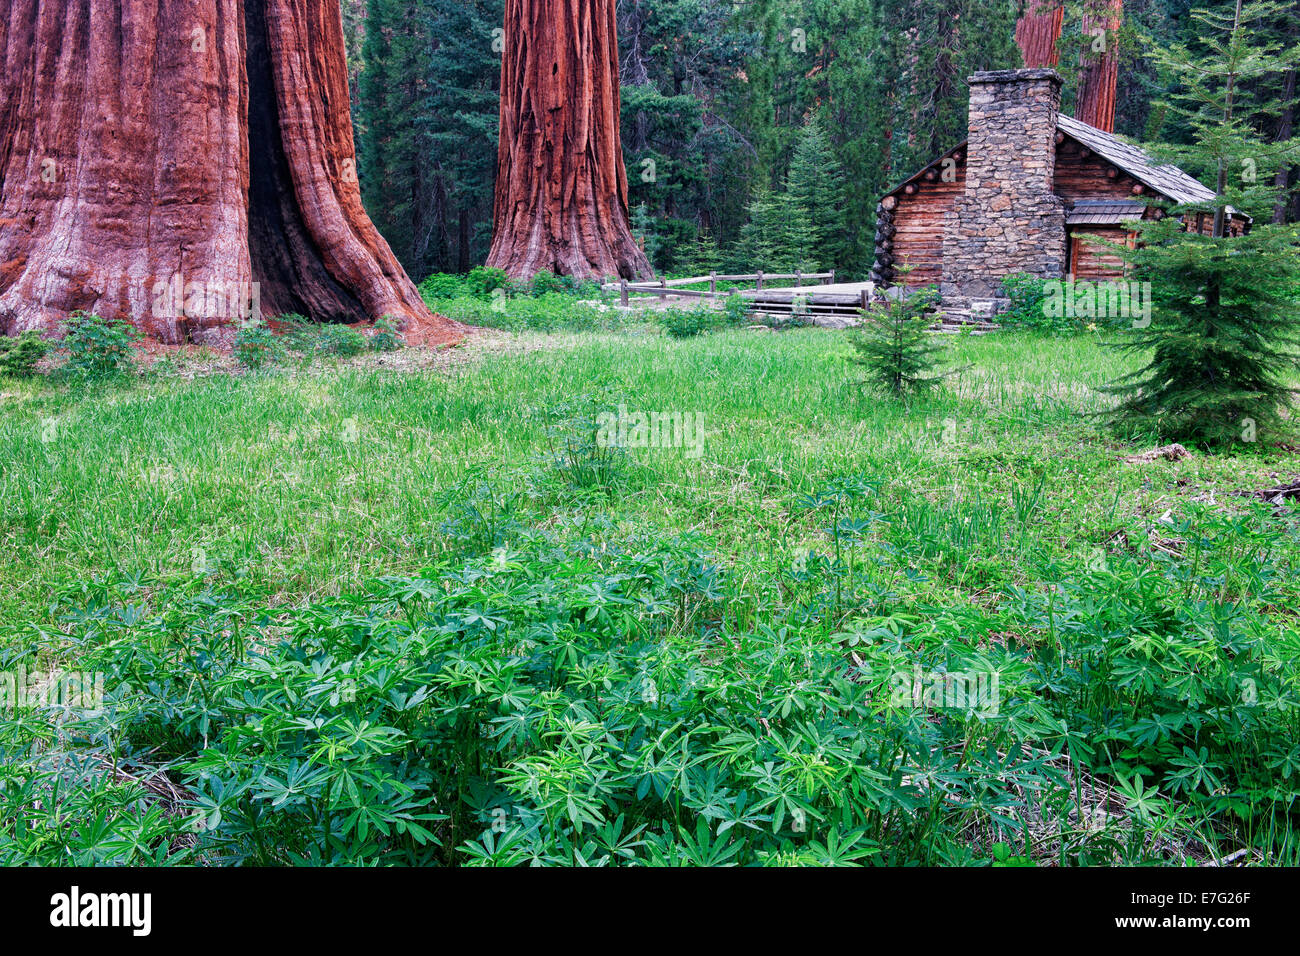 Das historische Museum Hütte entstand unter den Mariposa Grove von Giant Sequoias im kalifornischen Yosemite National Park. Stockfoto